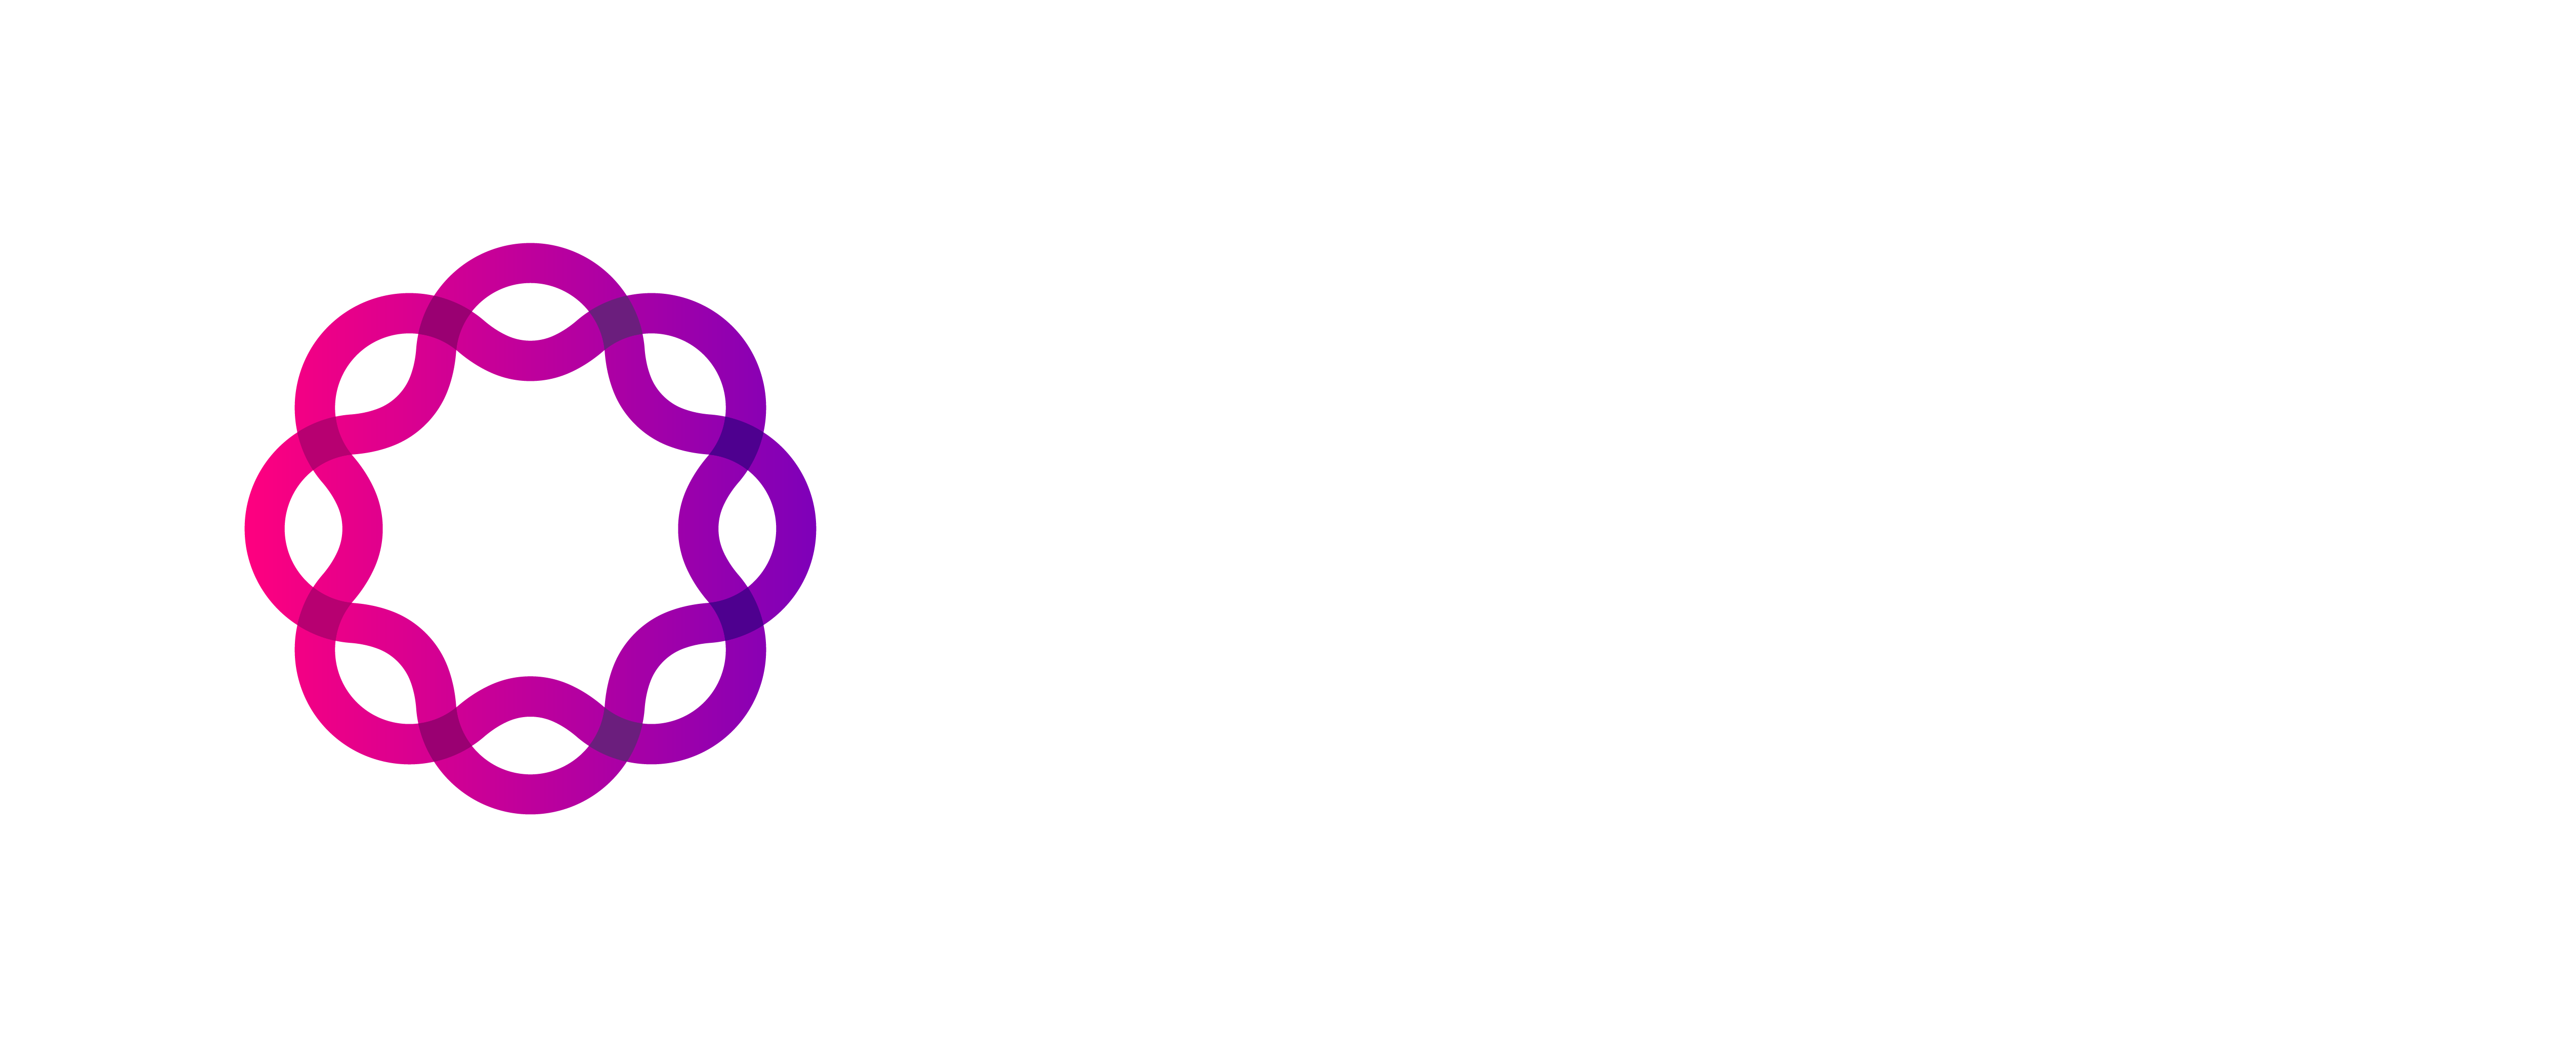 Branding - Logos | Ribbon